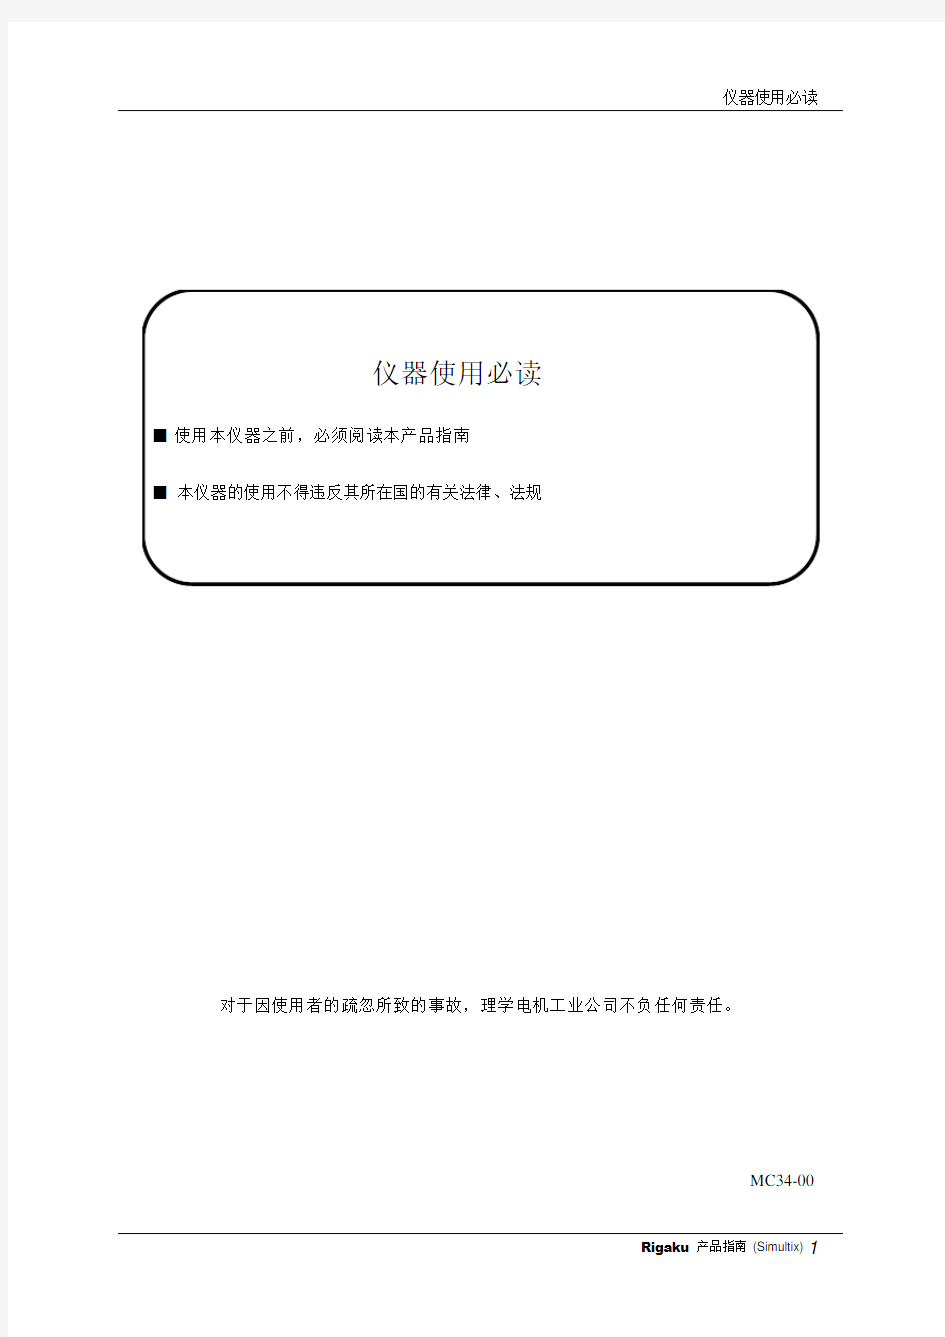 波长色散型荧光仪中文说明书用户必读手册